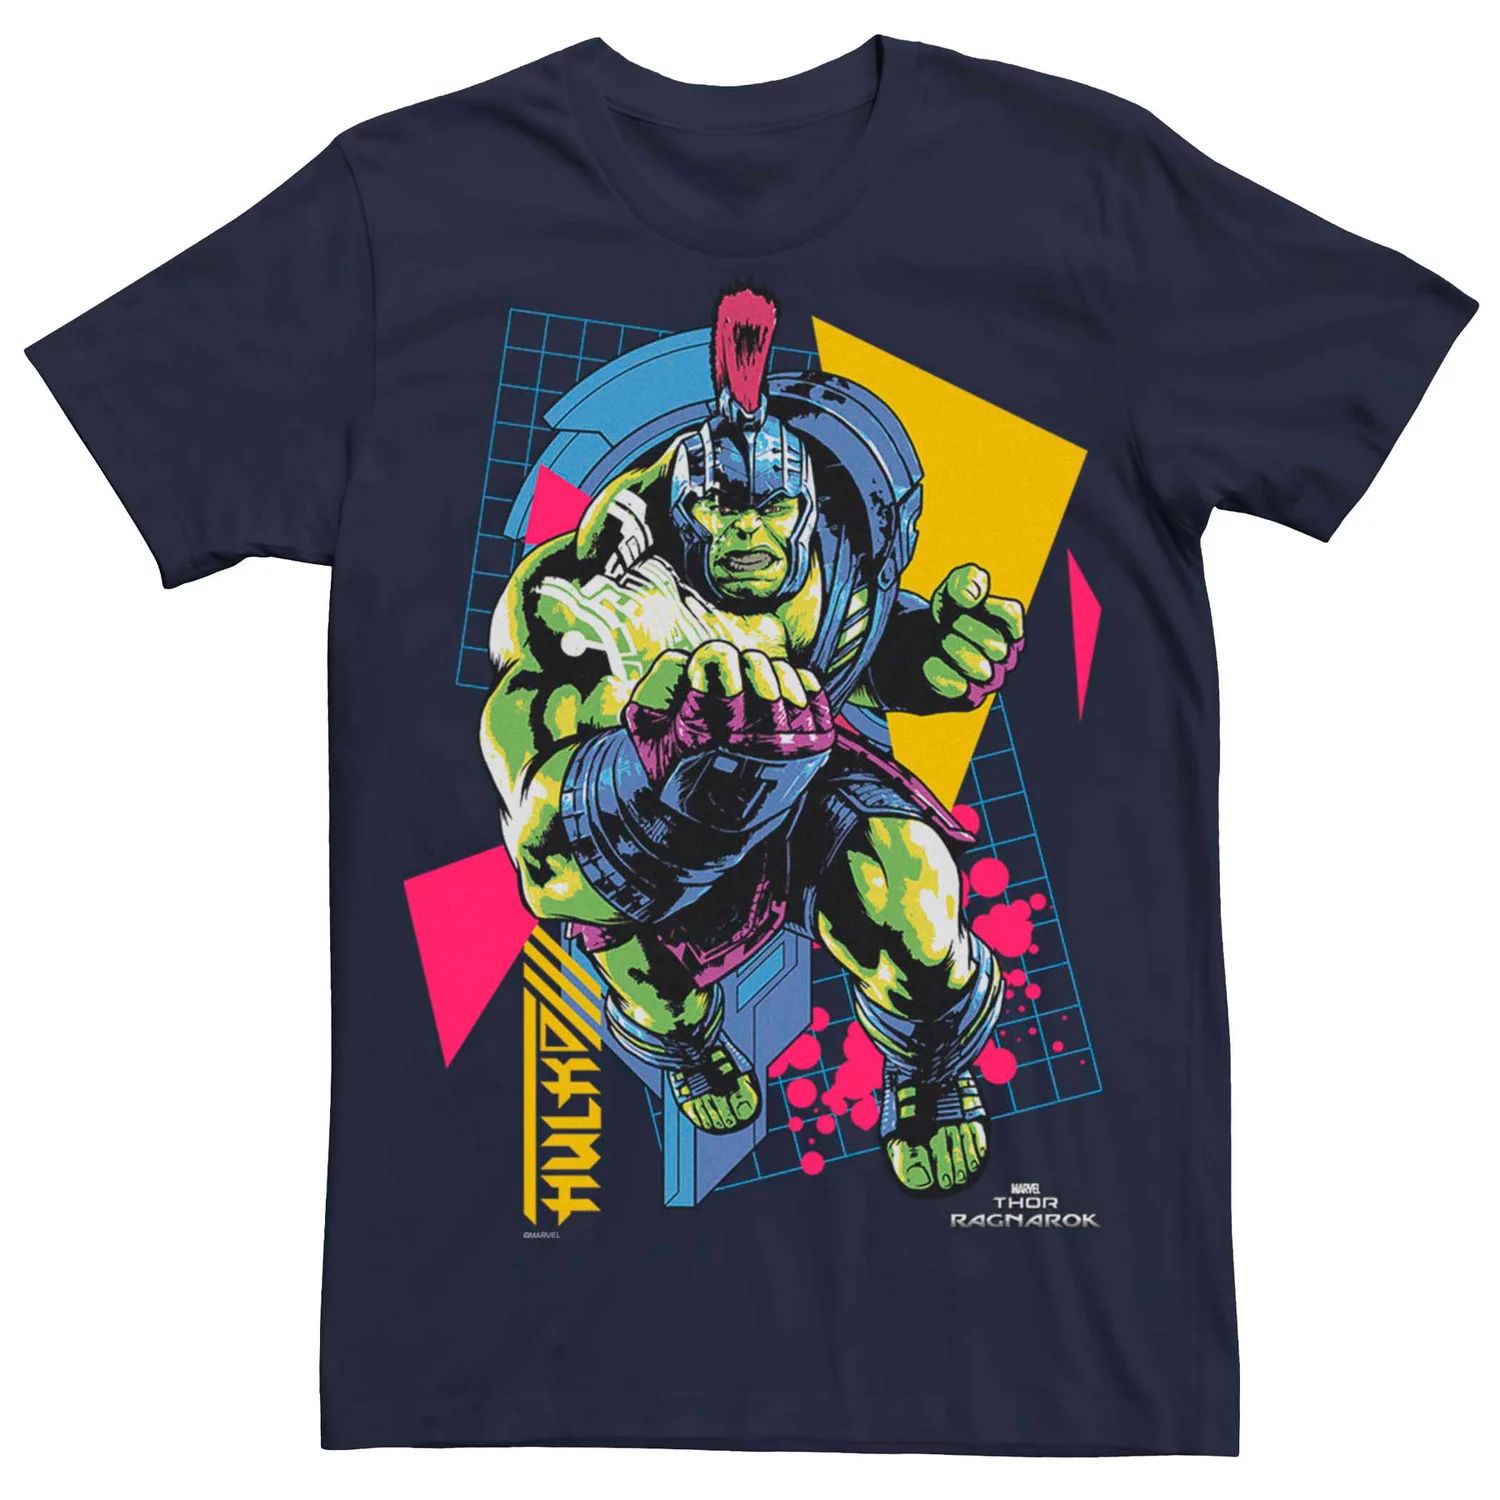 Мужская футболка Marvel's Retro с геометрическим рисунком Халка Licensed Character